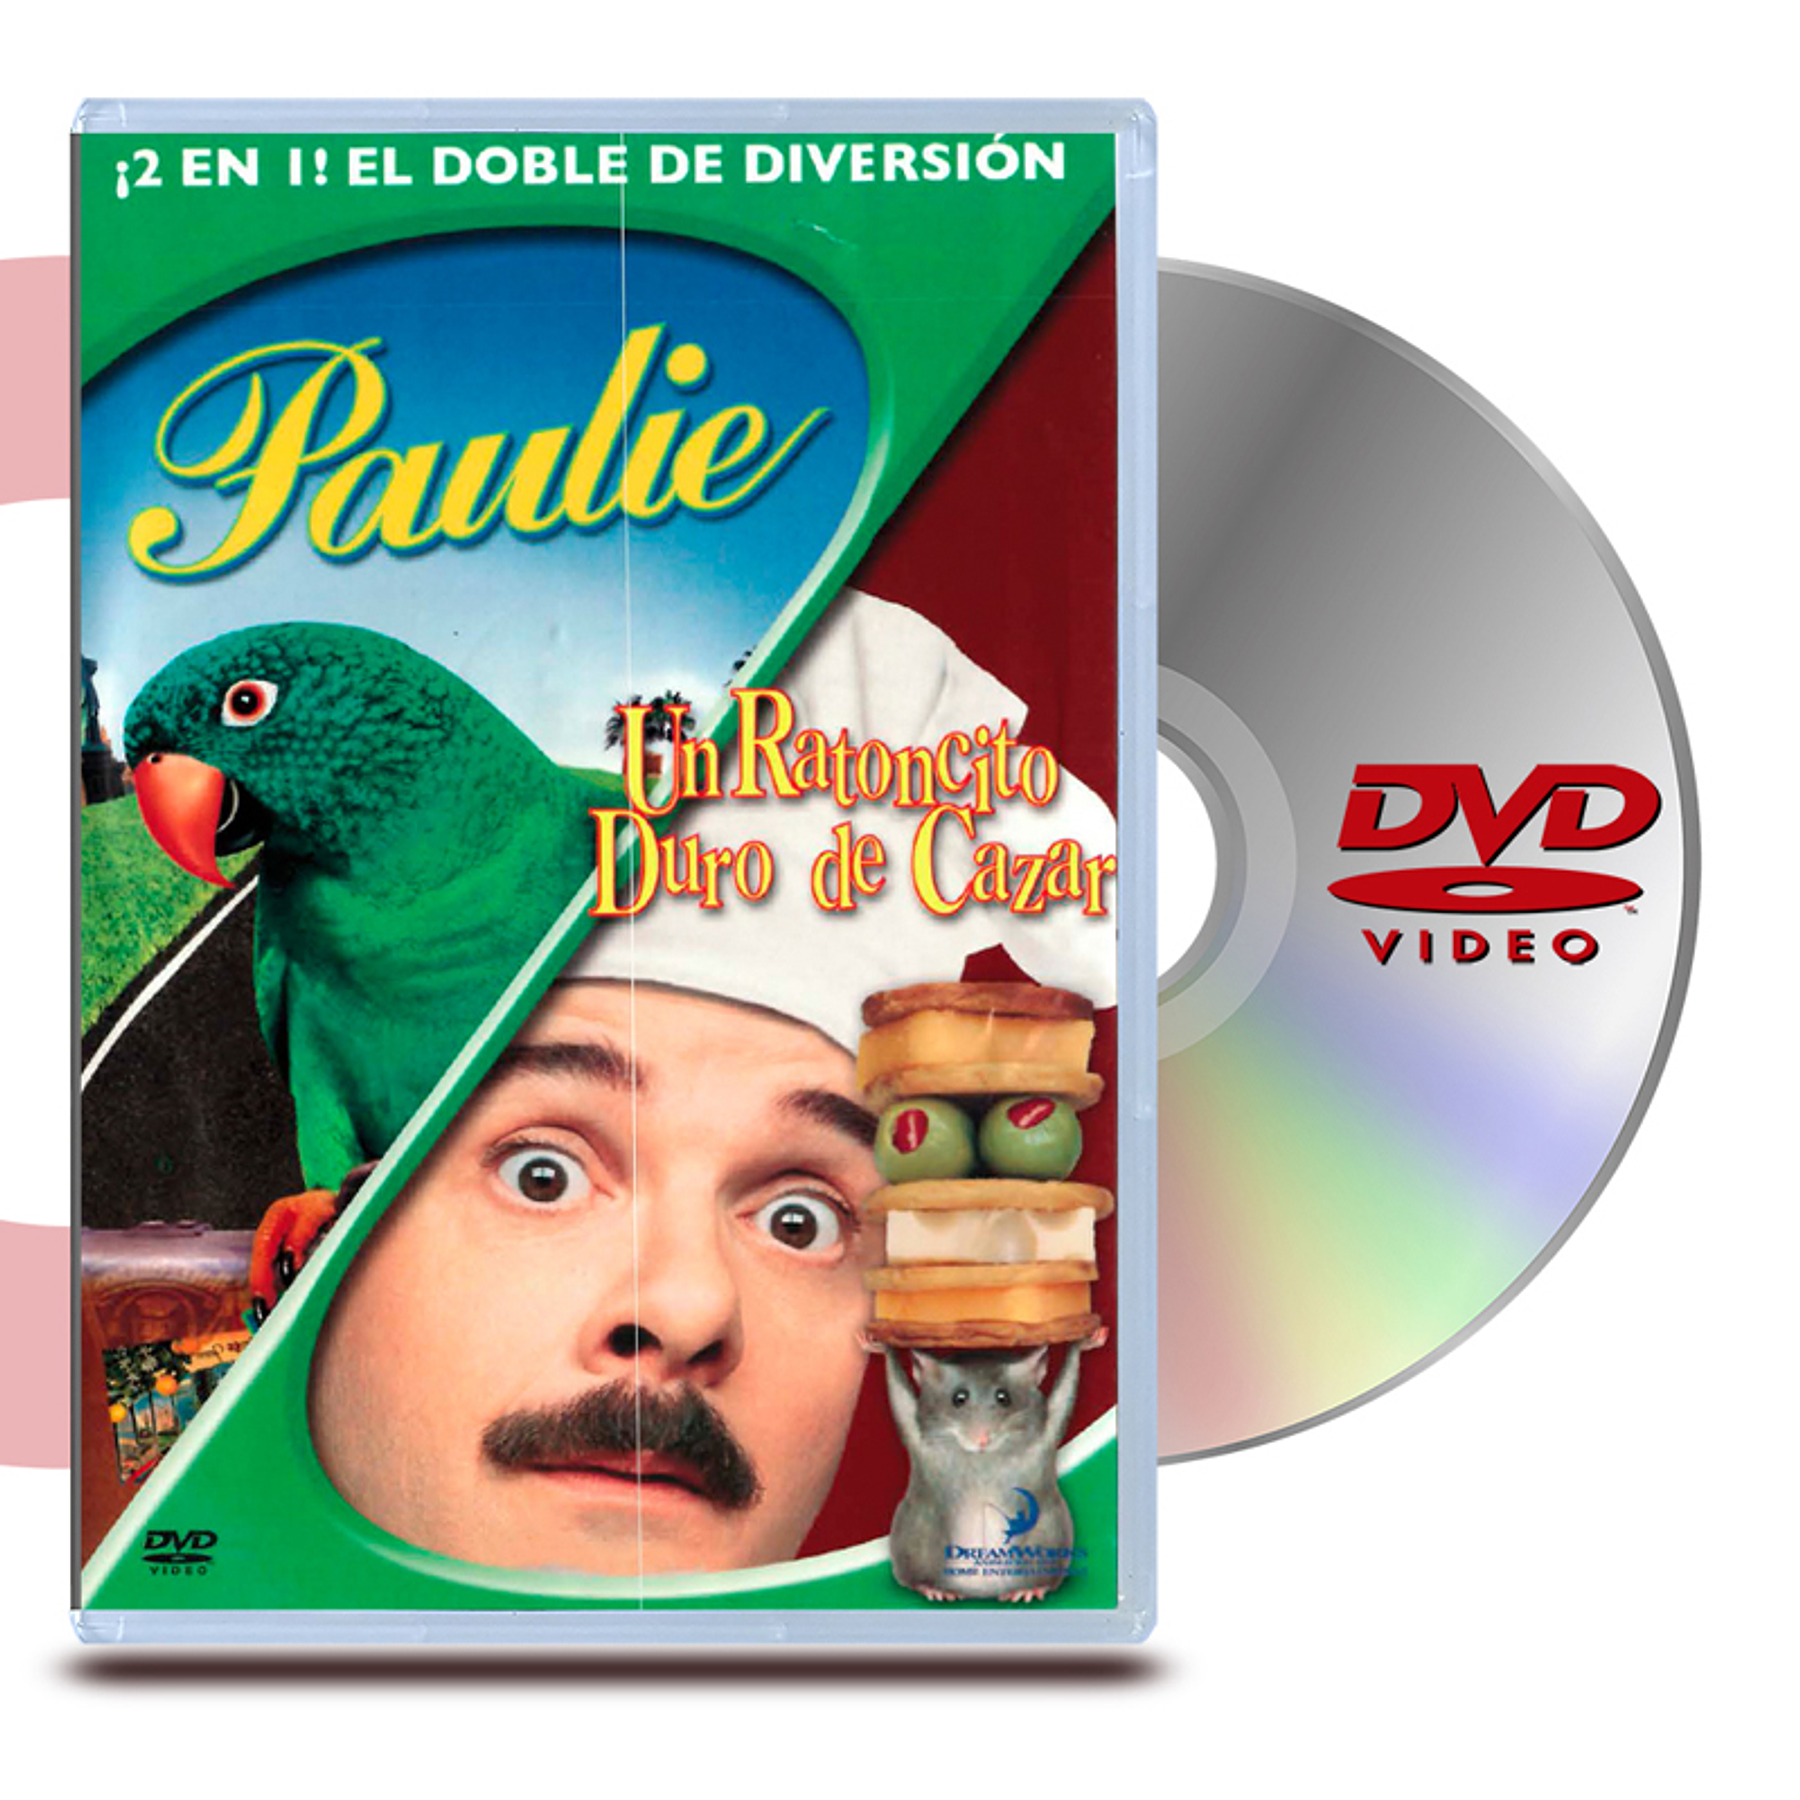 DVD UN RATONCITO DURO DE CAZAR / PAULIE